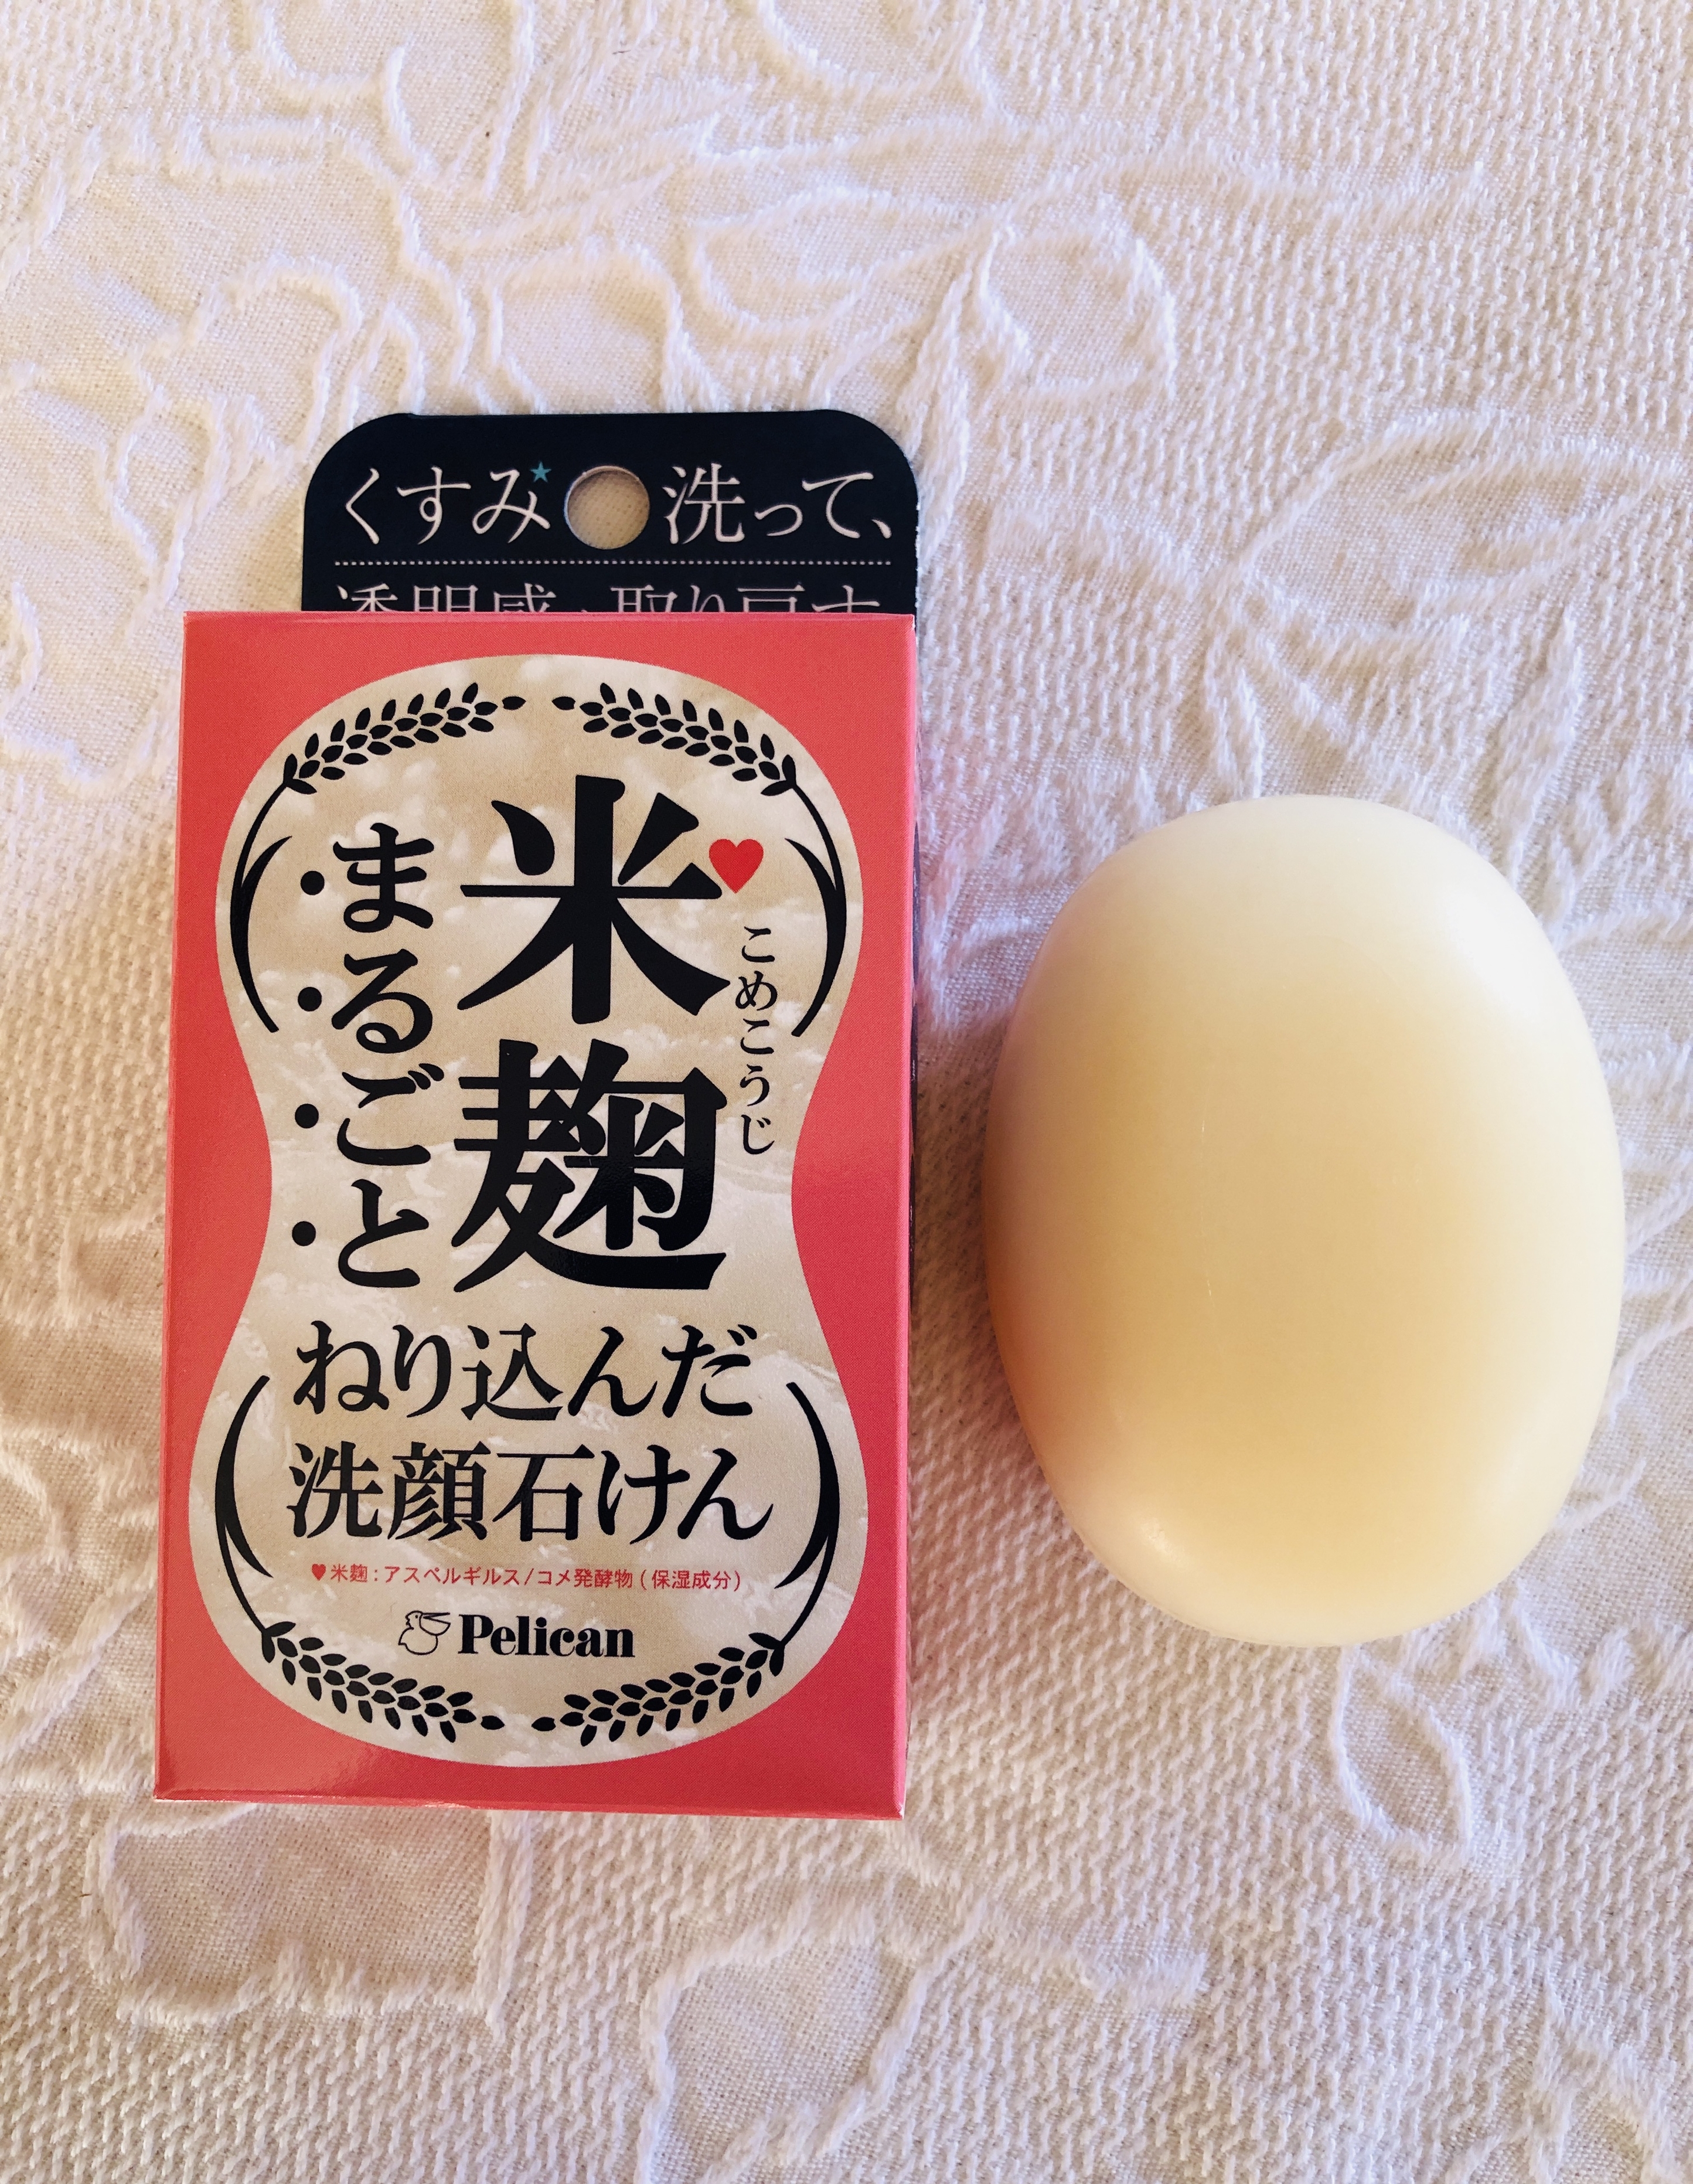 ペリカン石鹸(PELICAN SOAP) 米麹まるごとねり込んだ洗顔石けんに関するトラネコさんの口コミ画像3